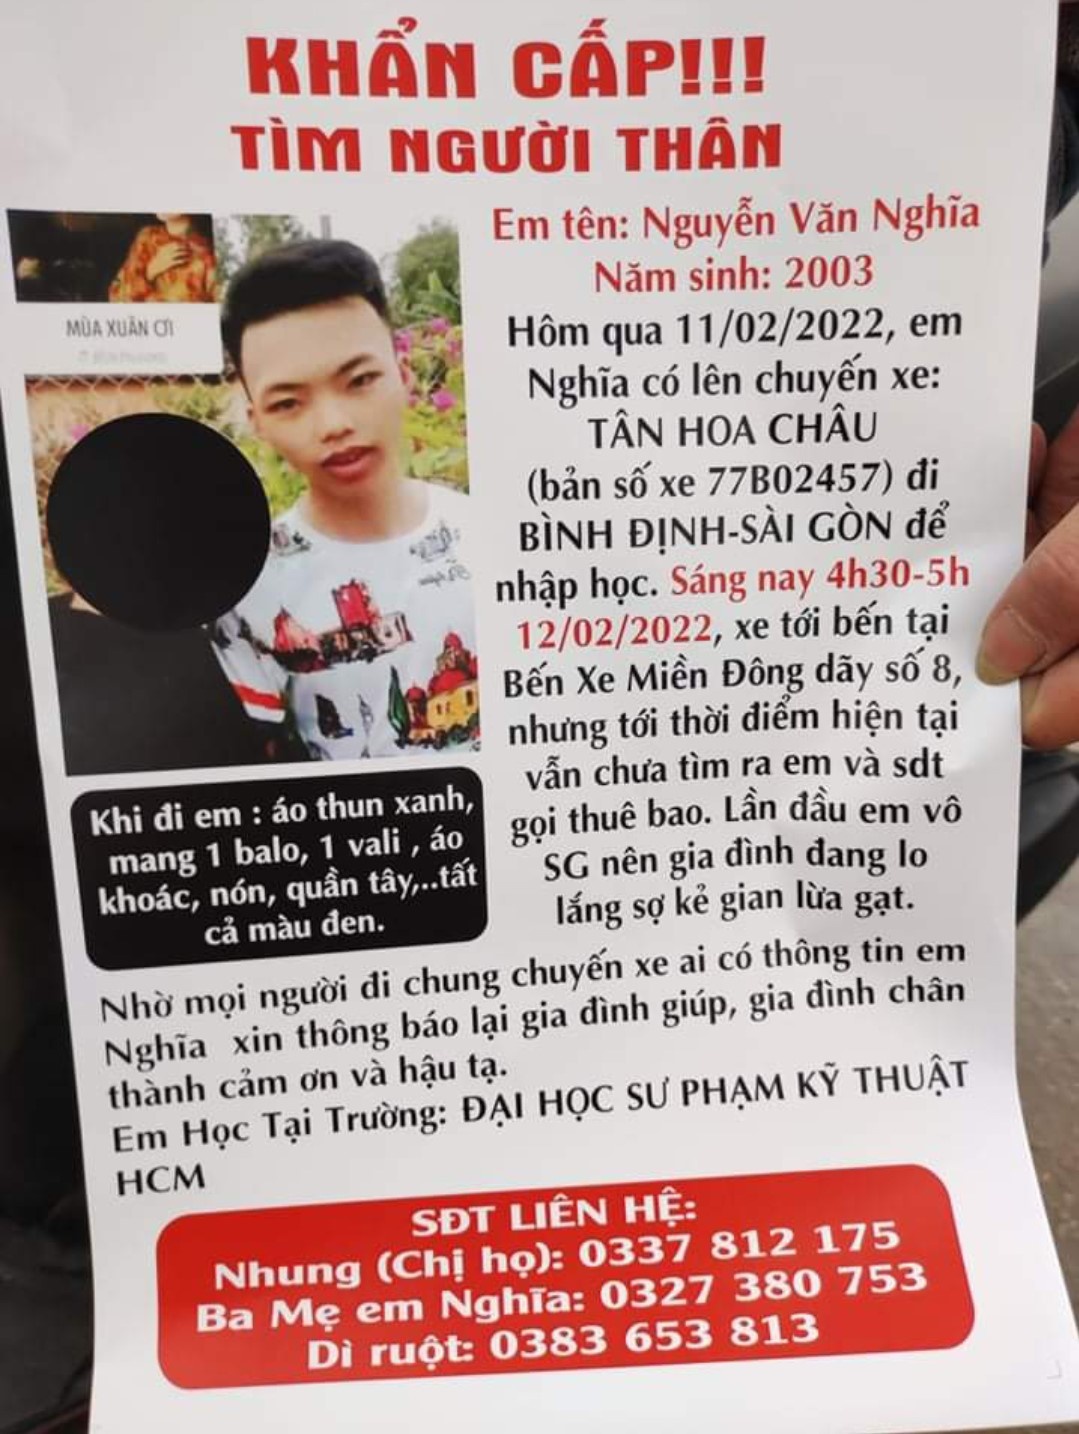 Một sinh viên mất liên lạc bí ẩn khi từ Bình Định vào TP.HCM nhập học - ảnh 2